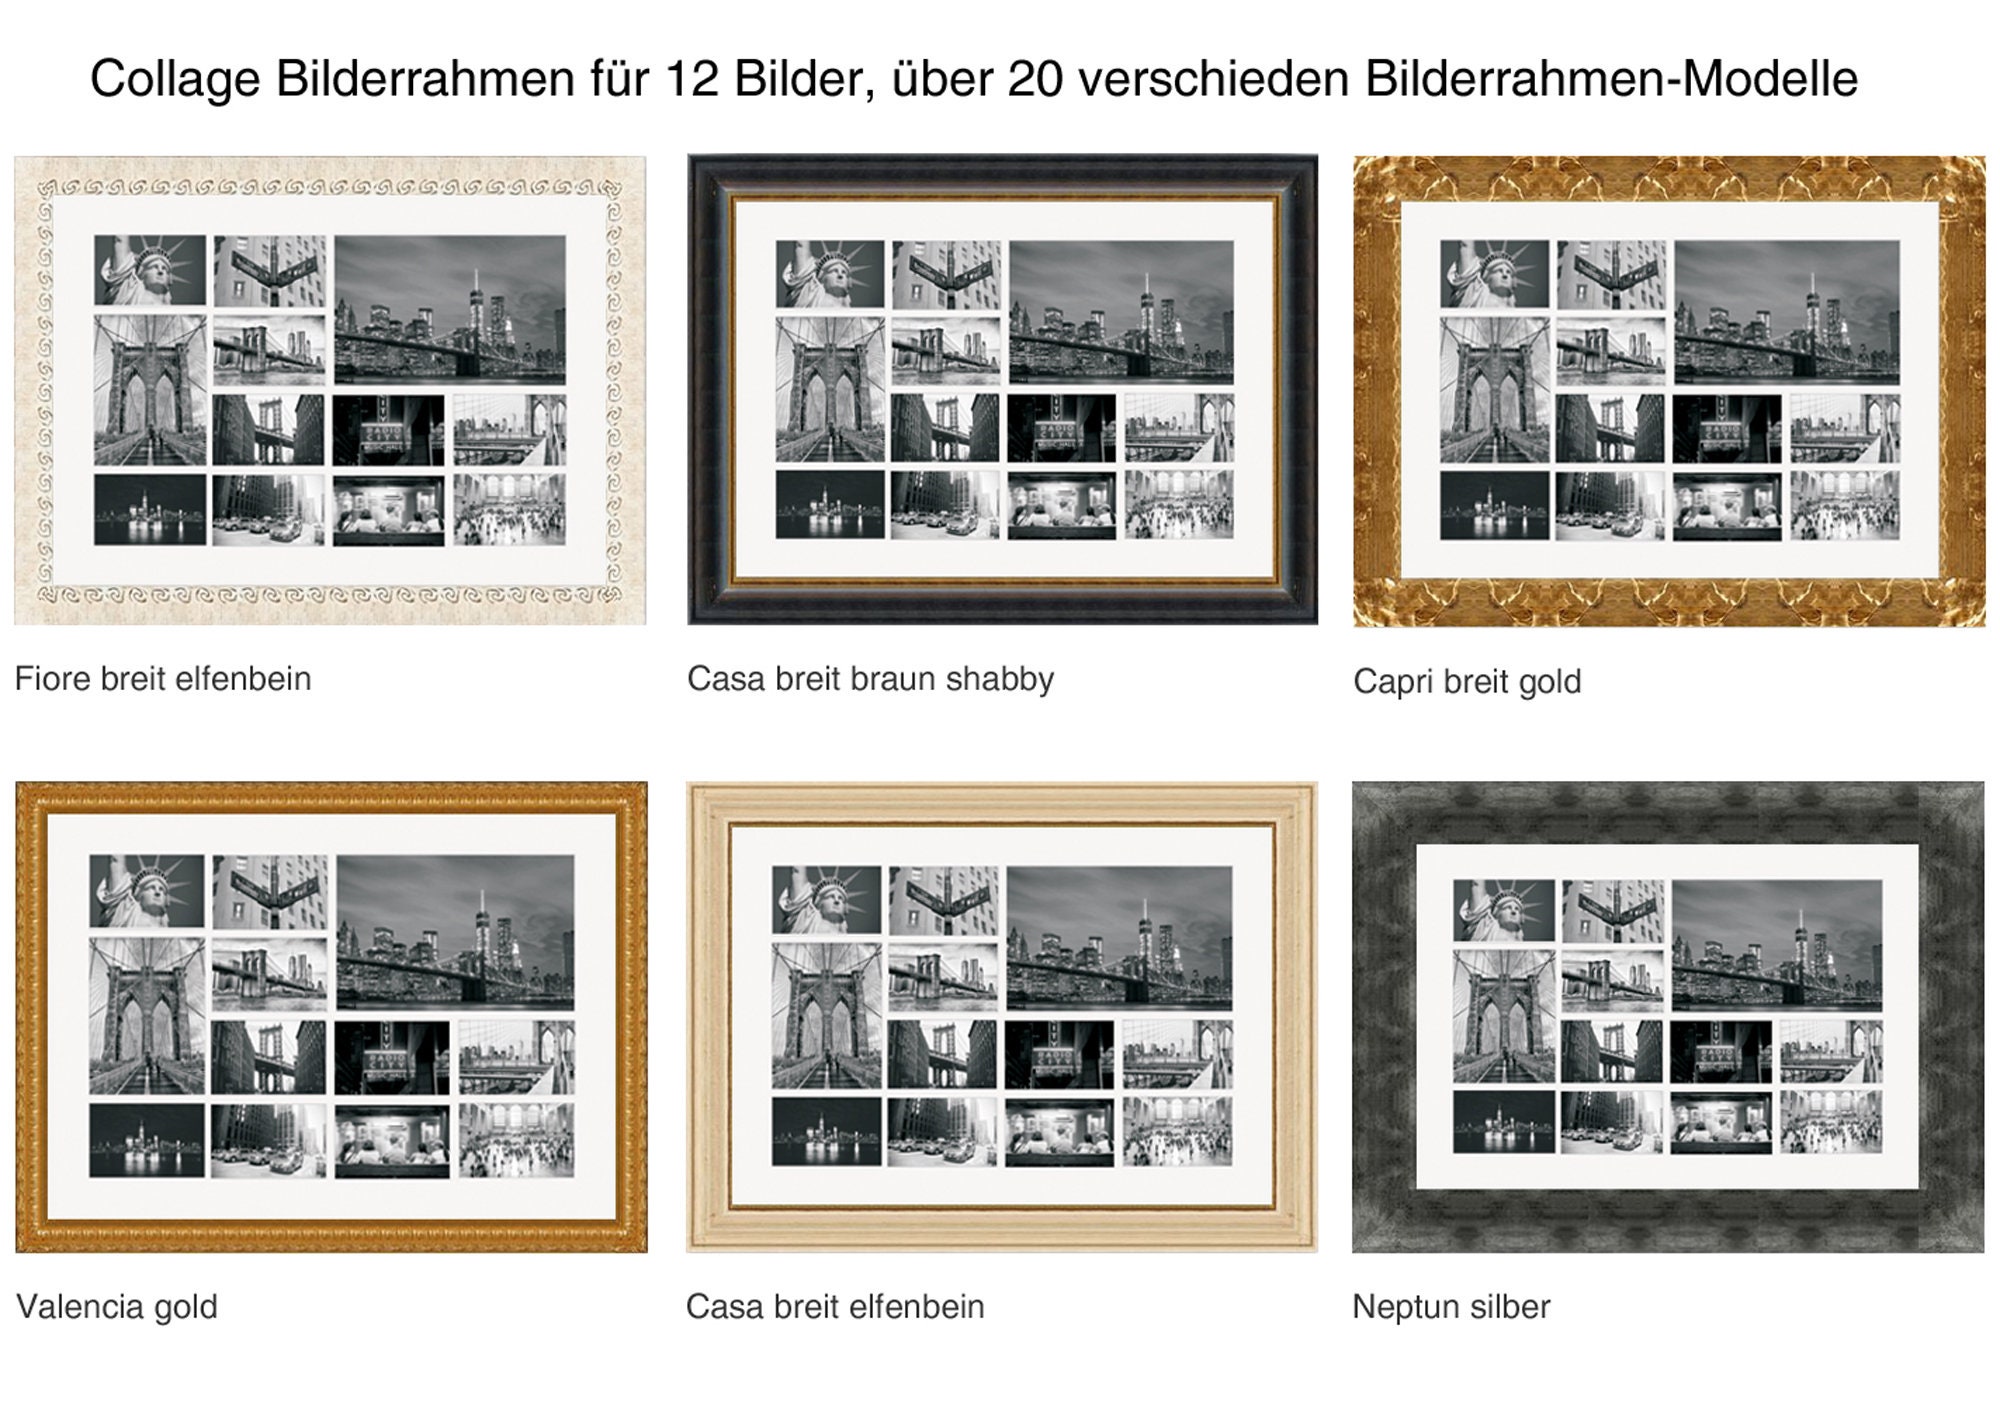 Marco de fotos para 12 fotos, 10x15 cm (Blanco) - EN STOCK